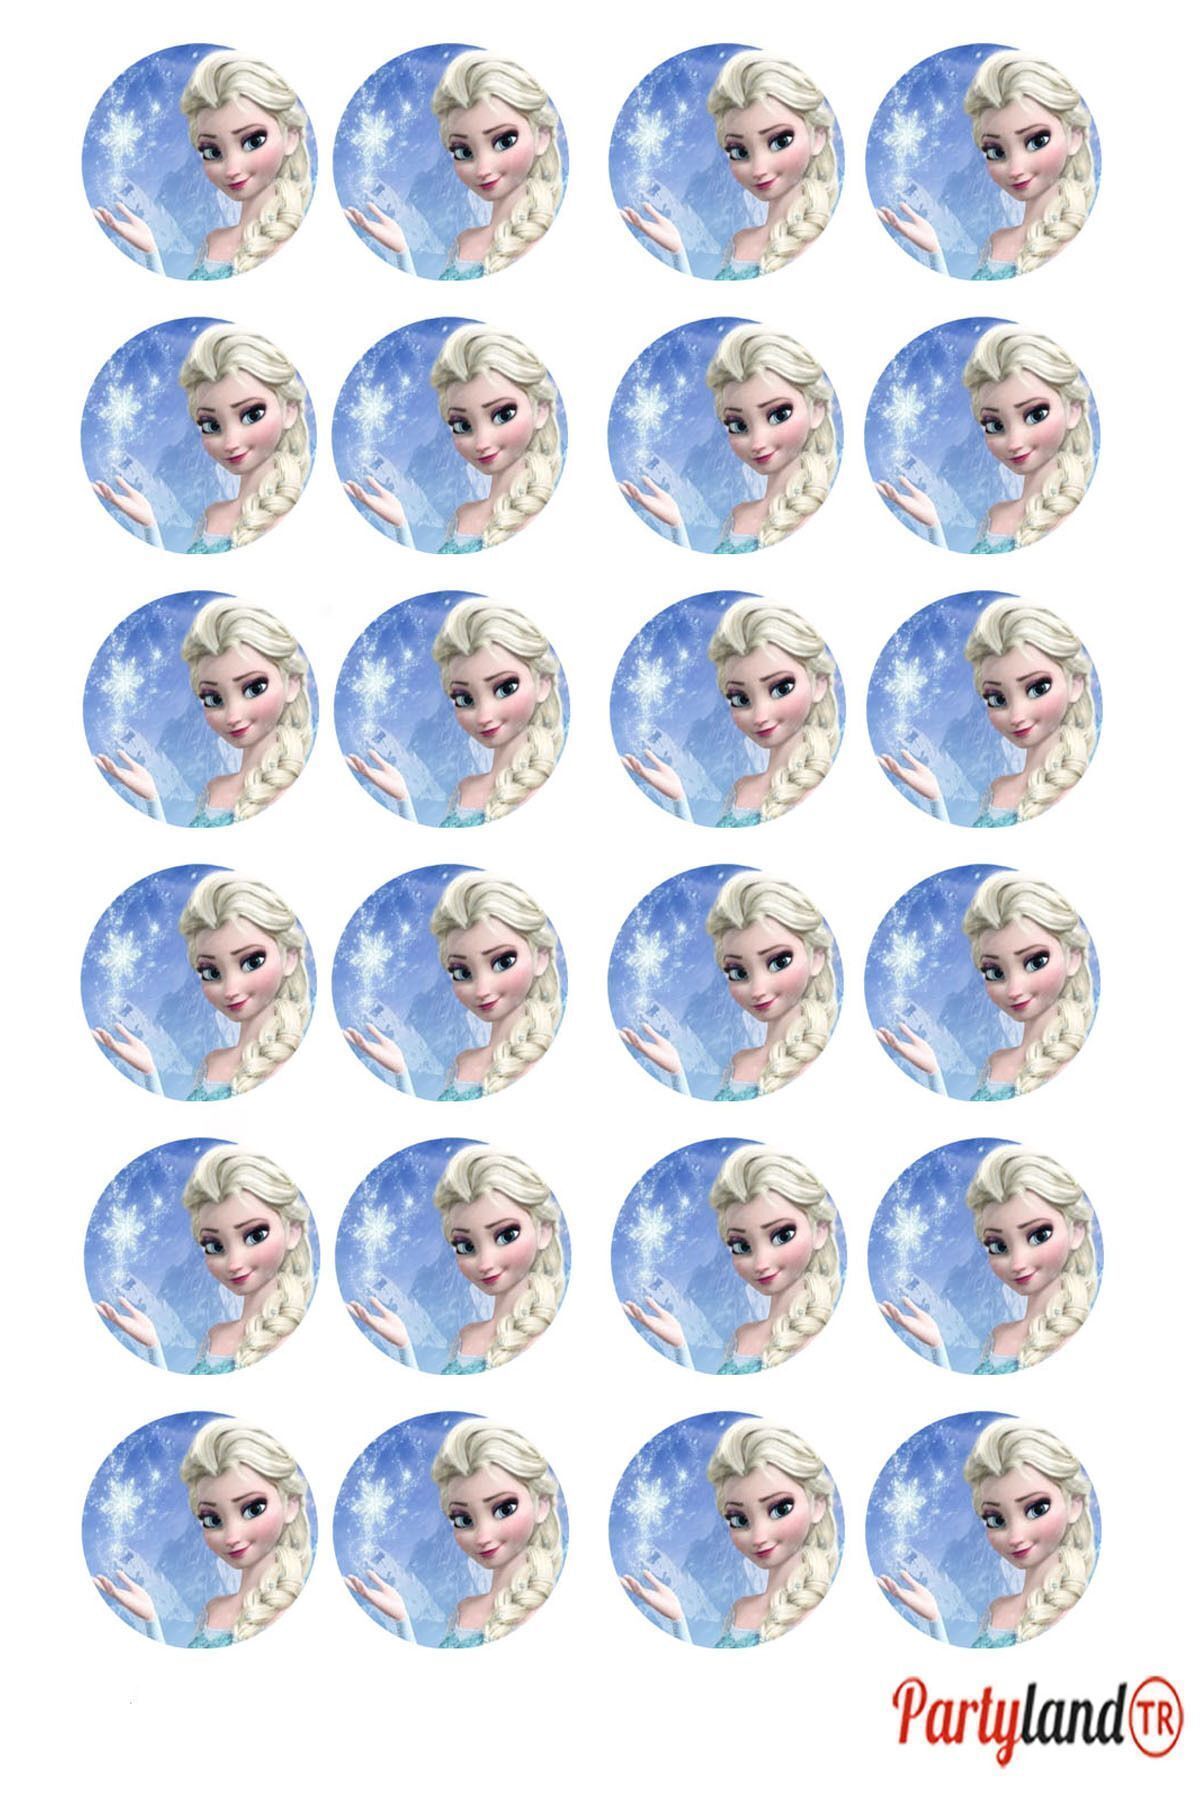 PartylandTR Frozen Elsa Karlar Ülkesi 5 cm. Yapışkanlı Yuvarlak Etiket - Sticker 24 Adet